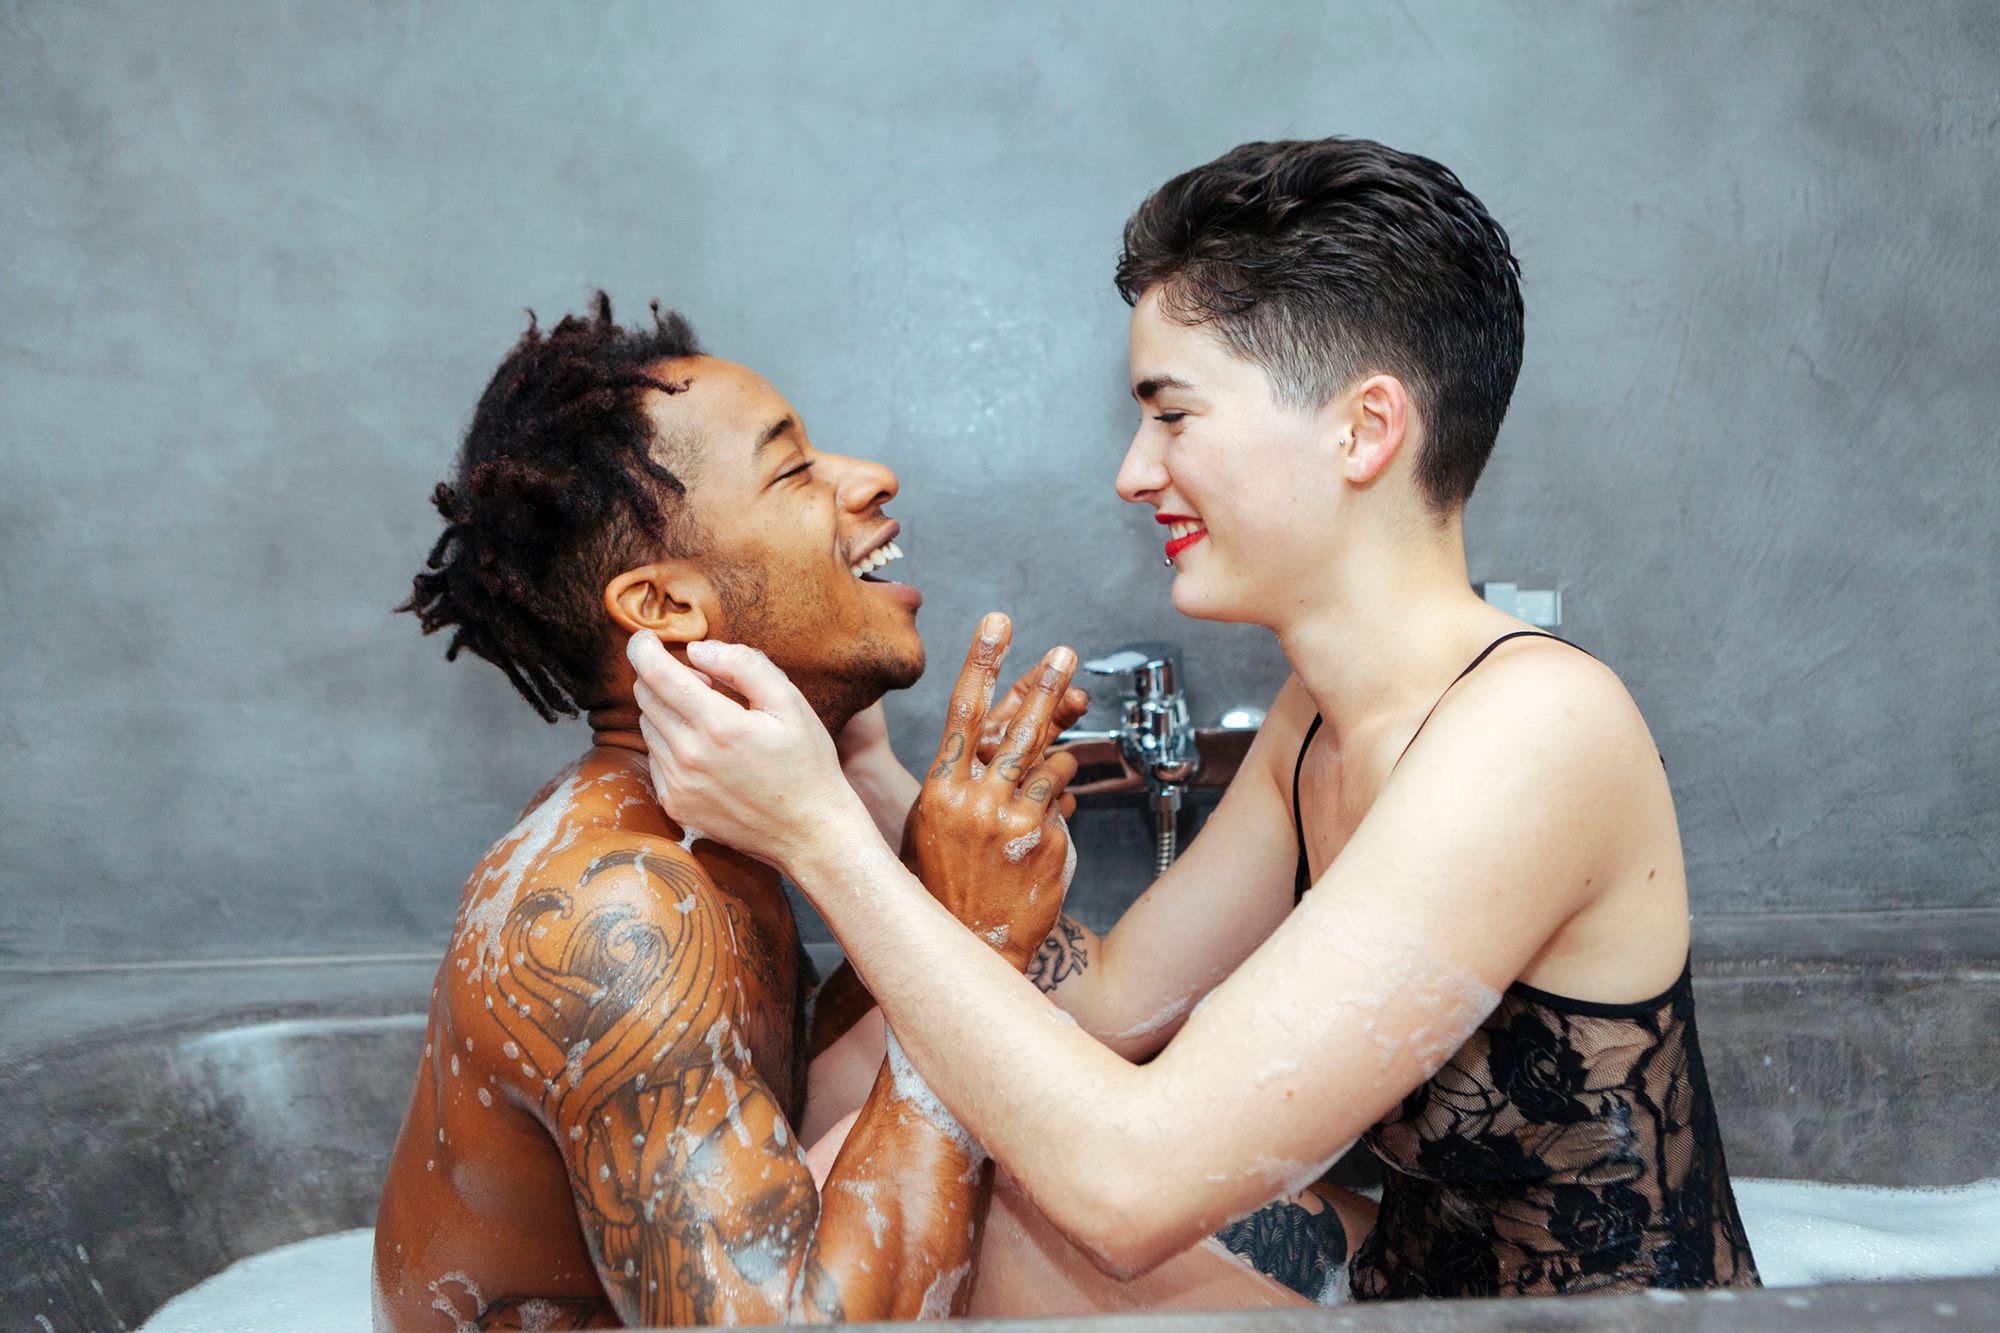 Kitzel Fetisch - Abbildung einer Frau und eines Mannes, welche lachend in der Badewanne sitzen.